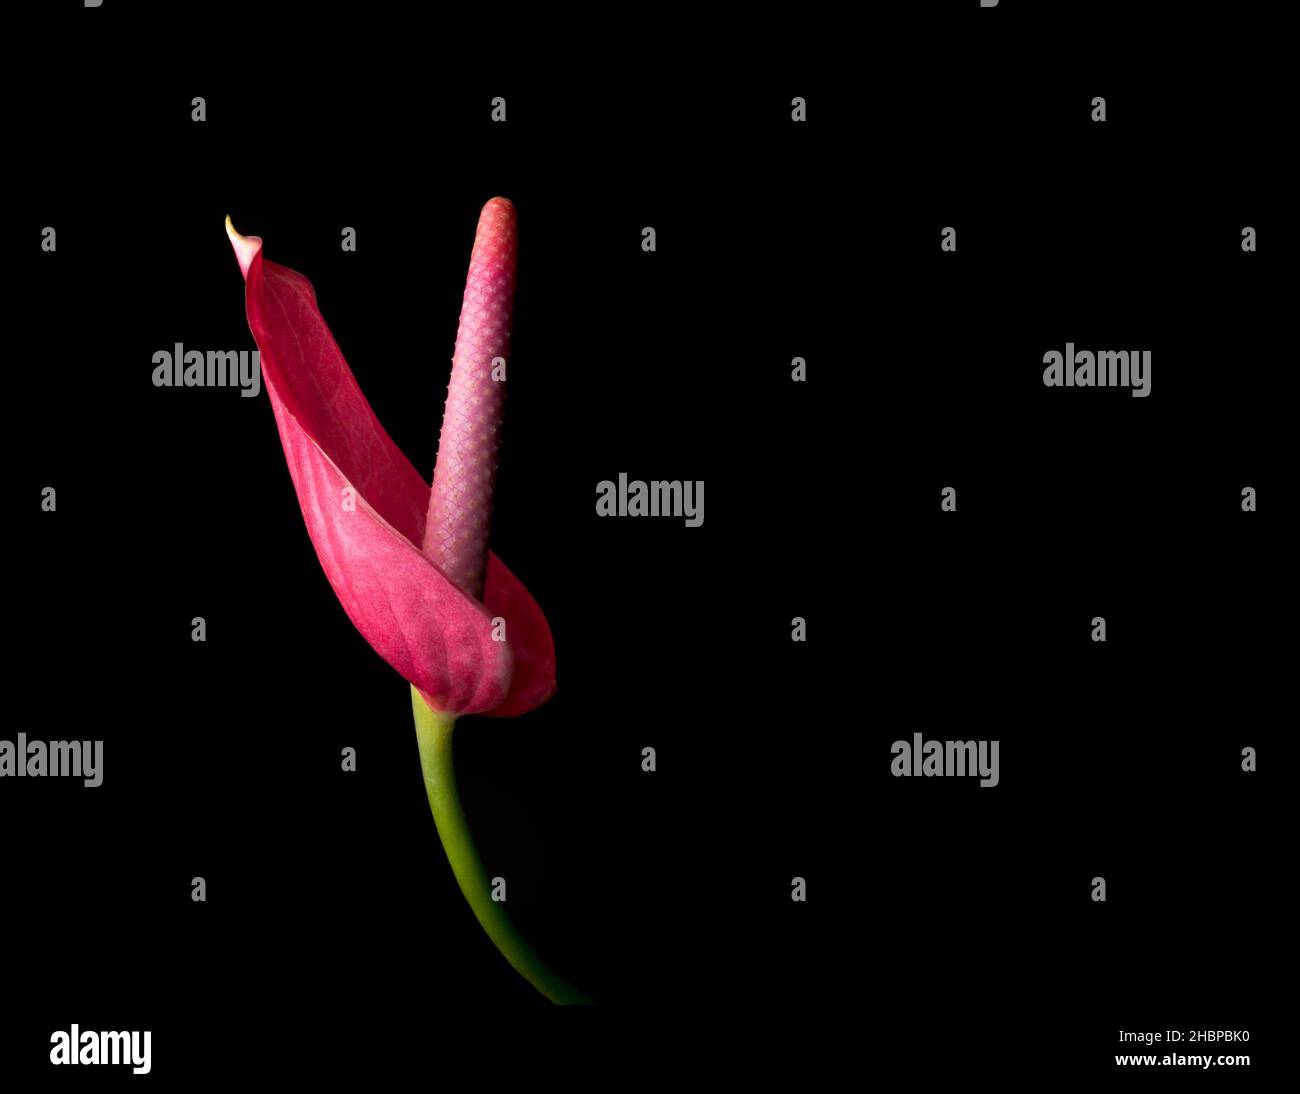 flor de anthurium, también conocida como flor de cola, flamingo y laceleaf, vista lateral de una flor de color rojo aislada sobre fondo negro, primer plano Foto de stock